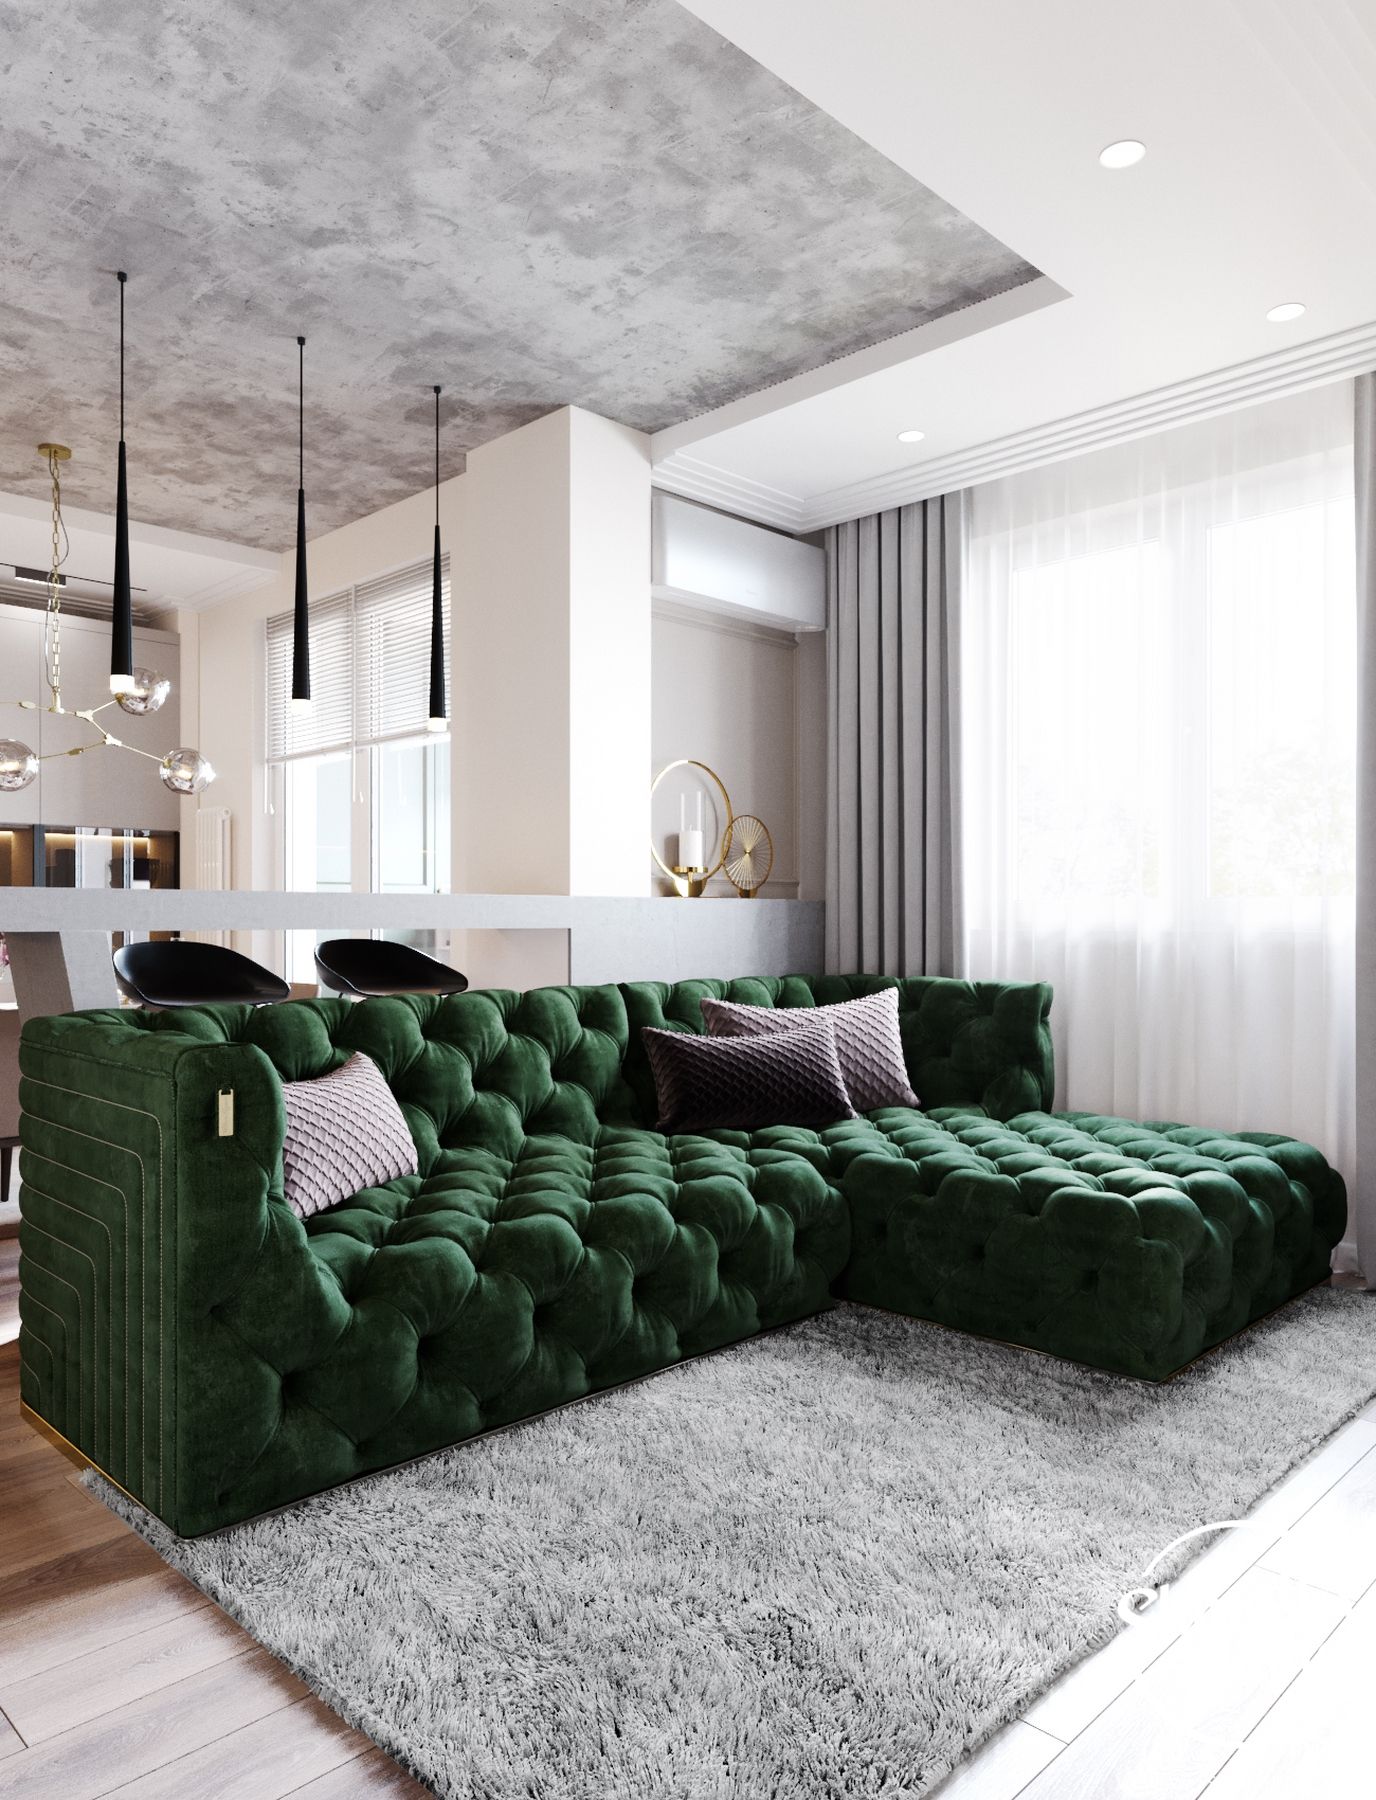 Интерьер с зеленым диваном: Зеленый диван в интерьере гостиной .